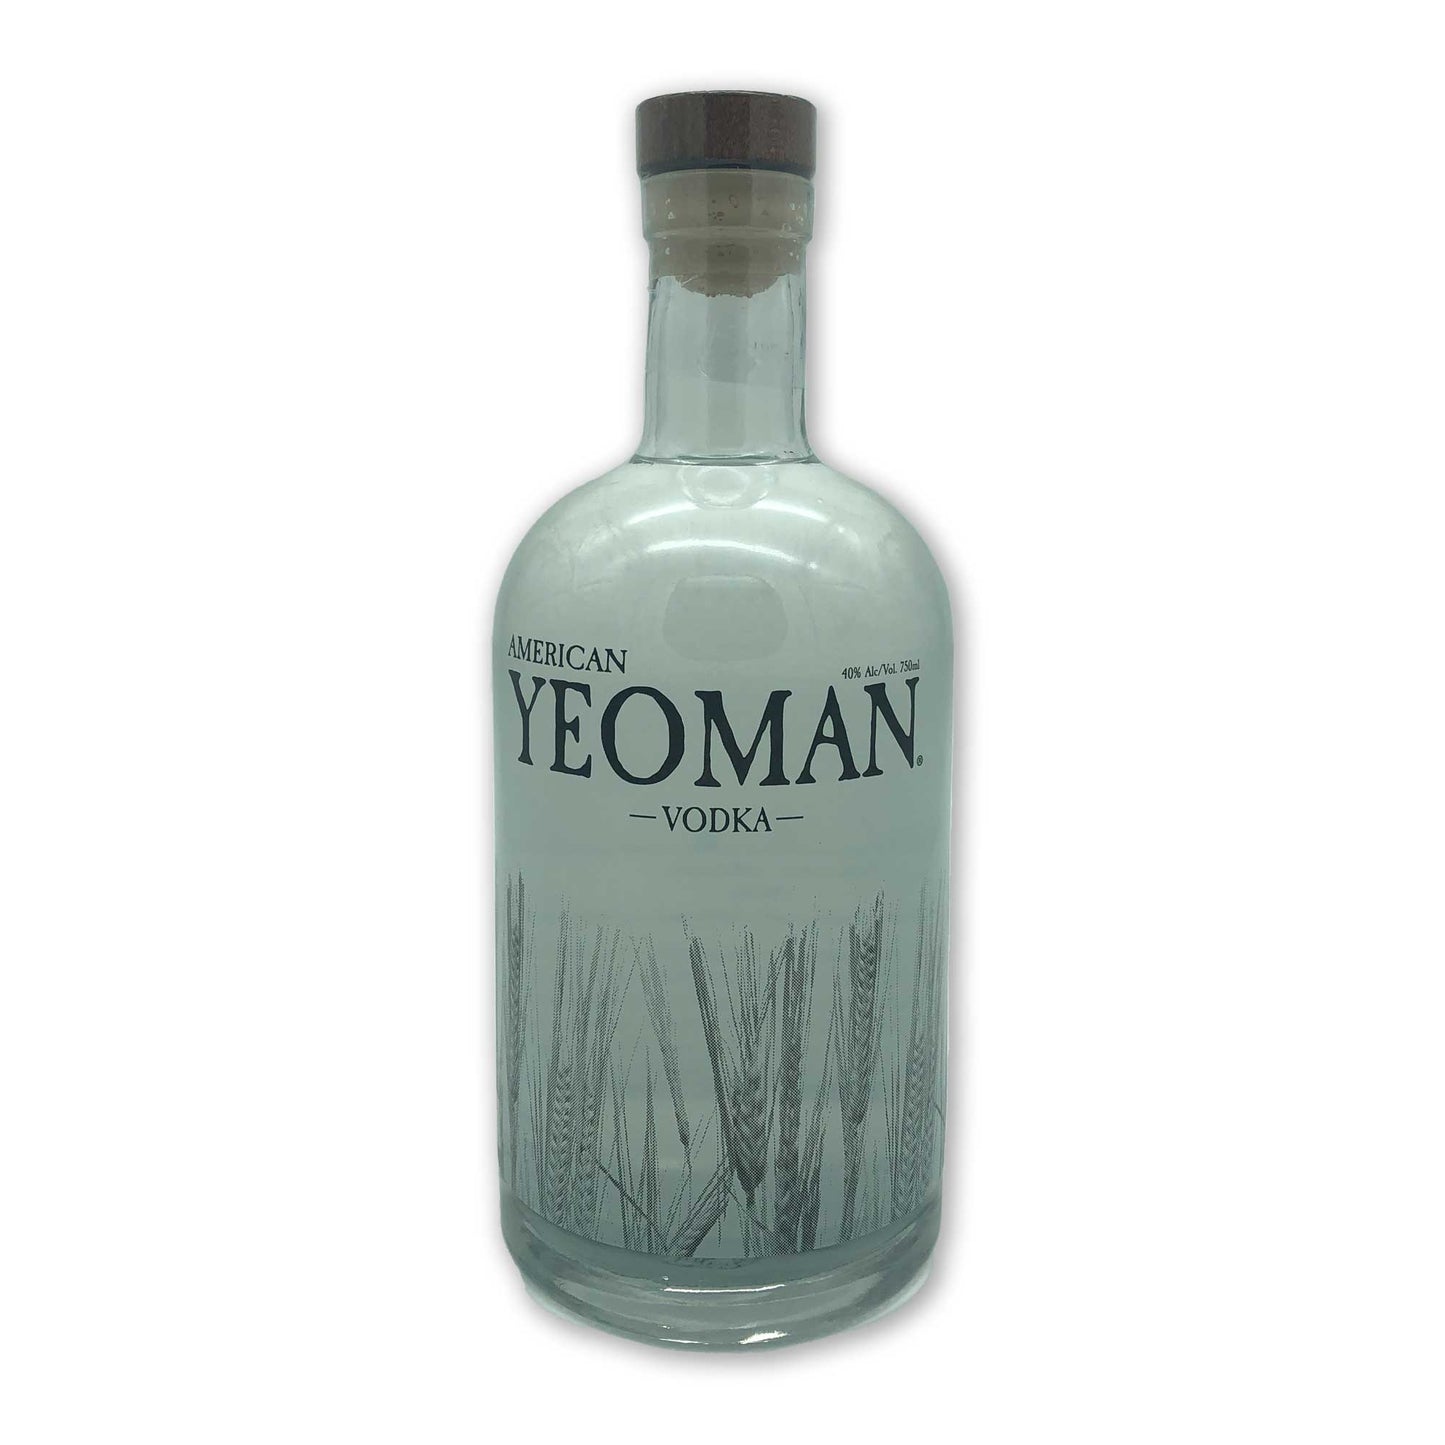 Perlick Distillery - Yeoman Vodka - Sarona, Wisconsin